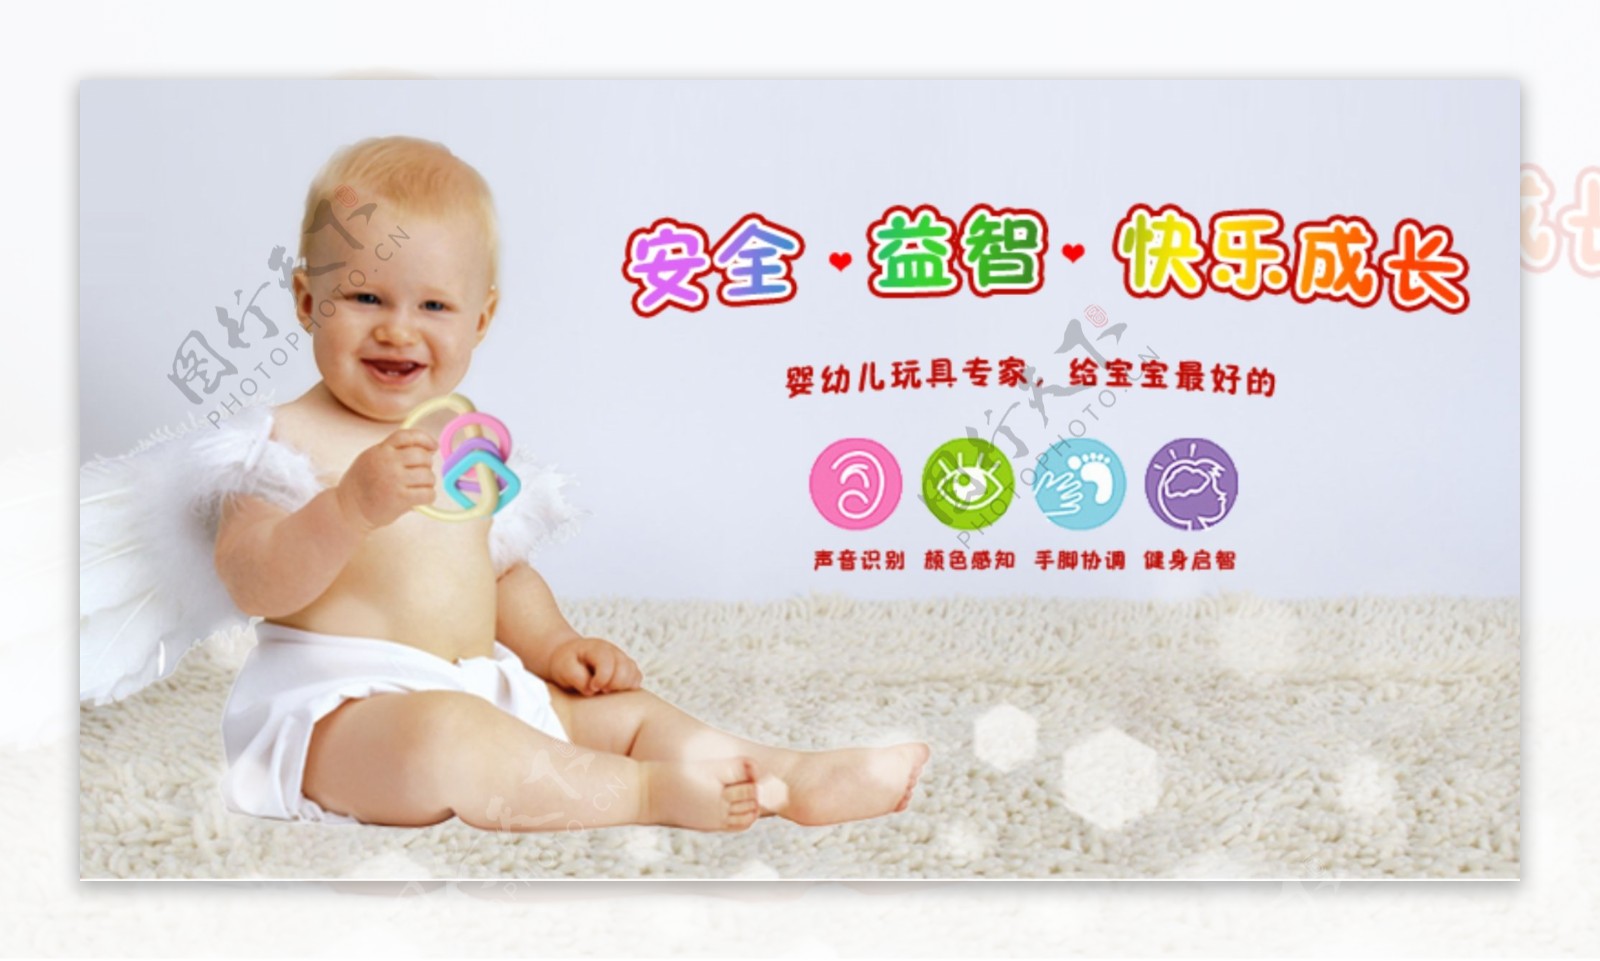 婴儿幼儿特别设计婴儿手摇铃组合